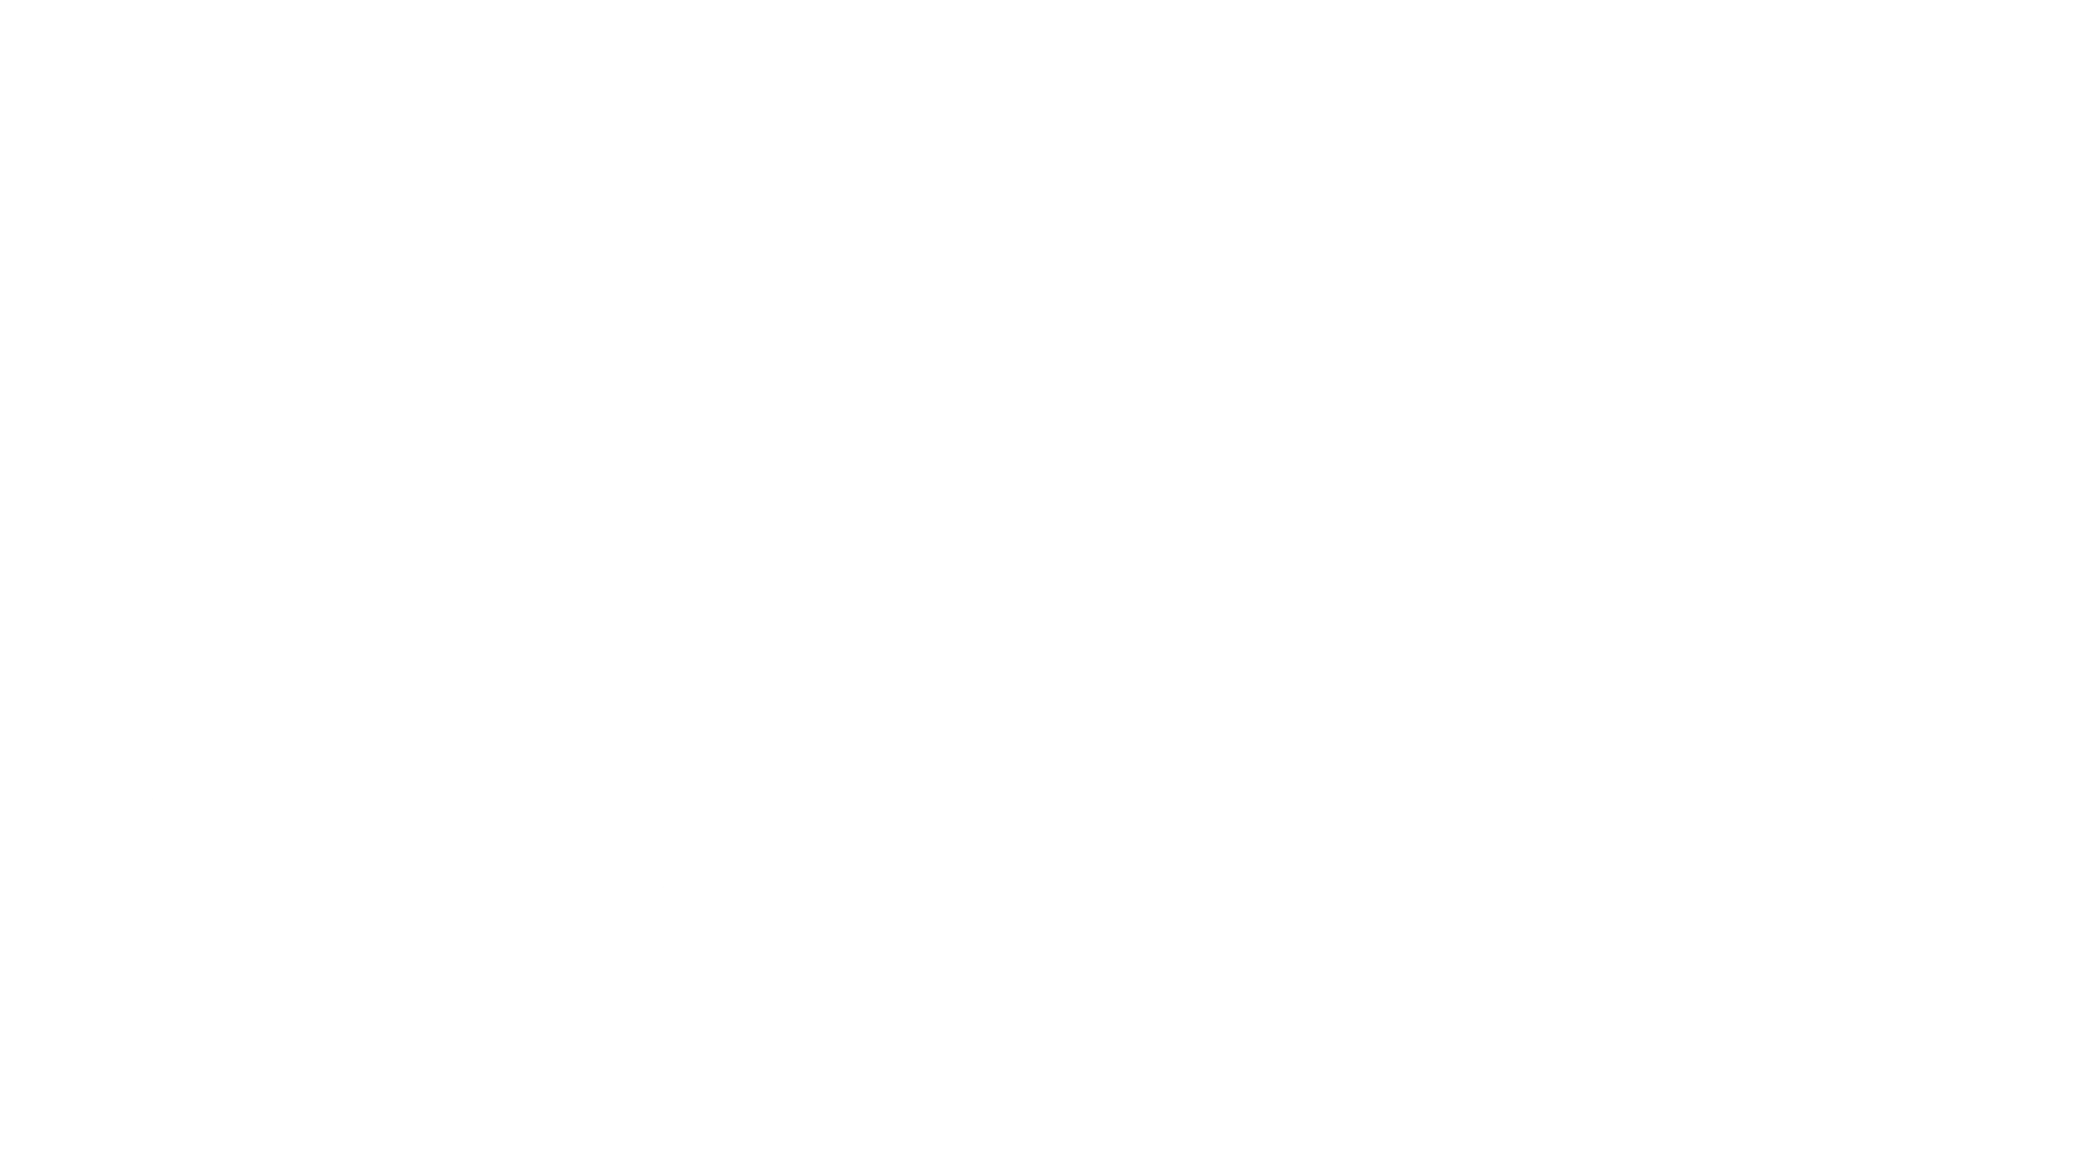 The Public Health Advocate